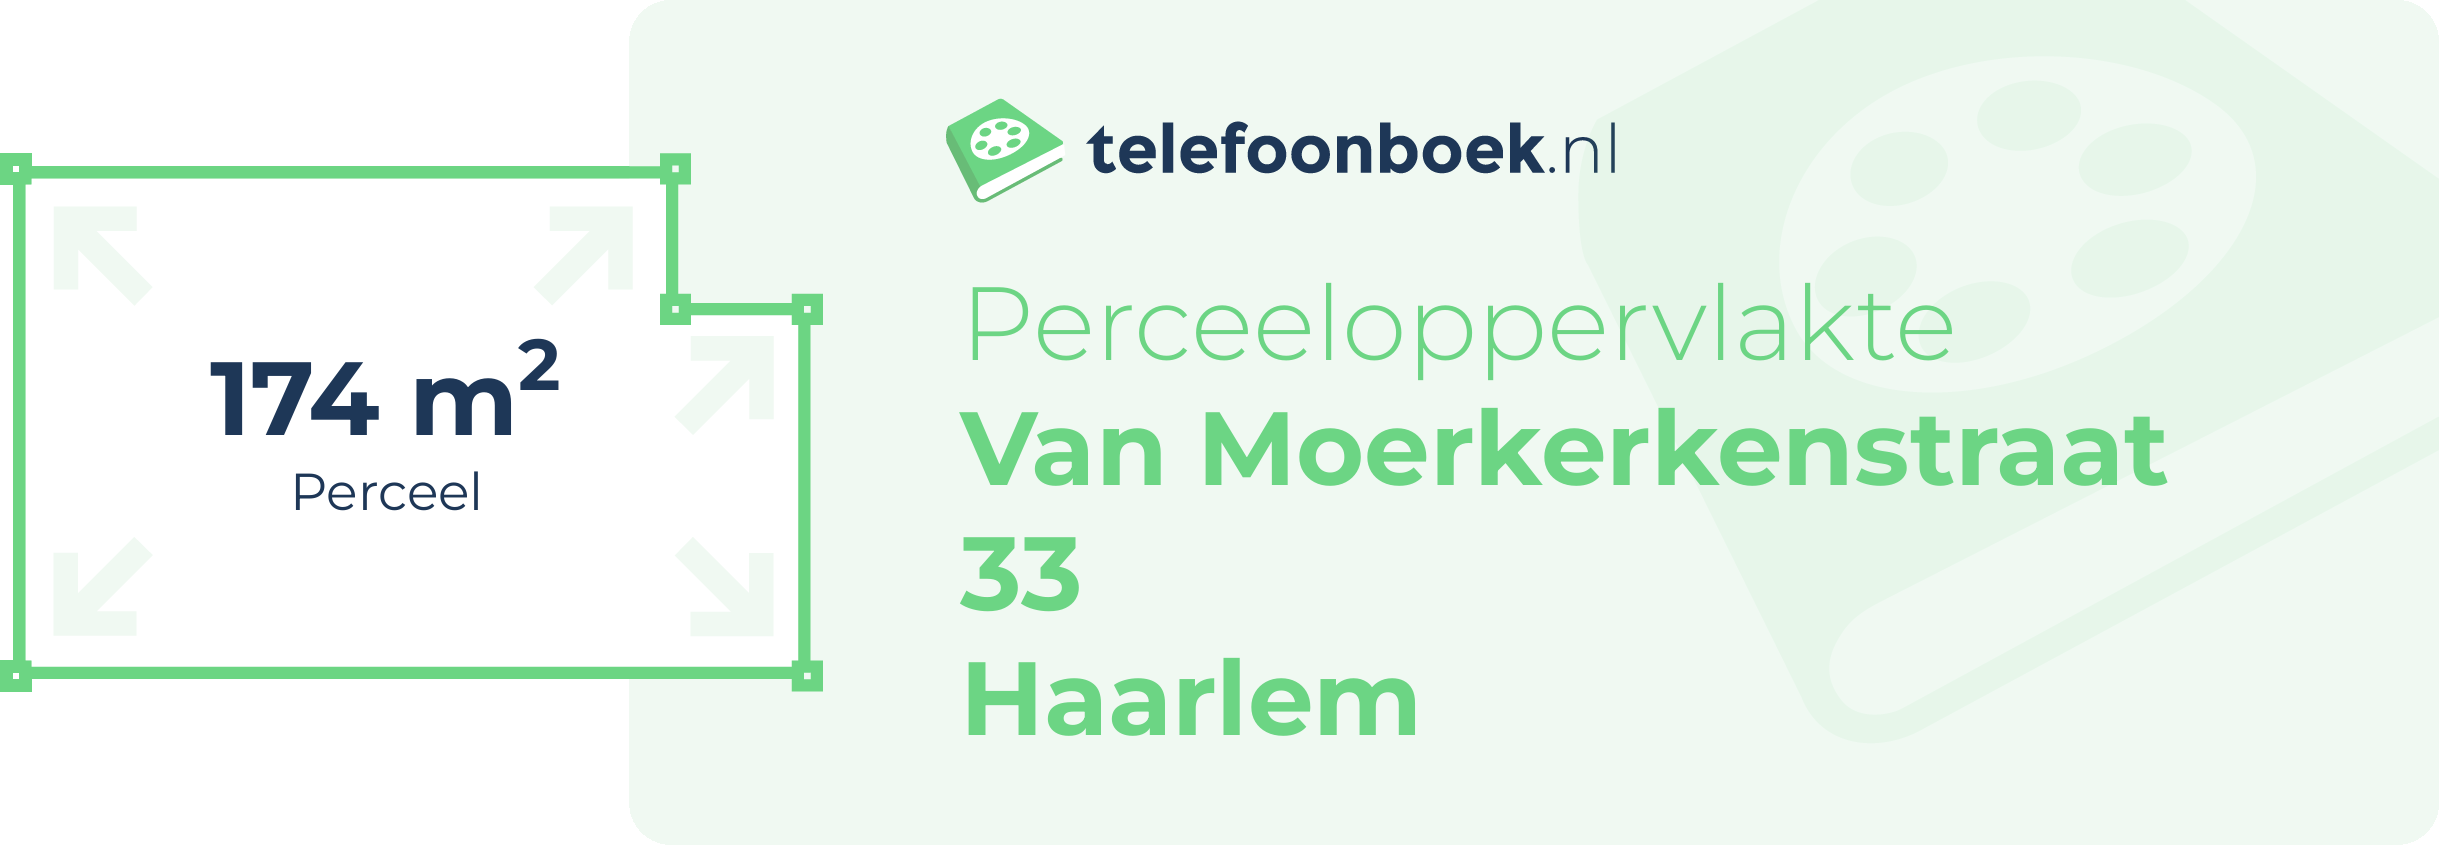 Perceeloppervlakte Van Moerkerkenstraat 33 Haarlem